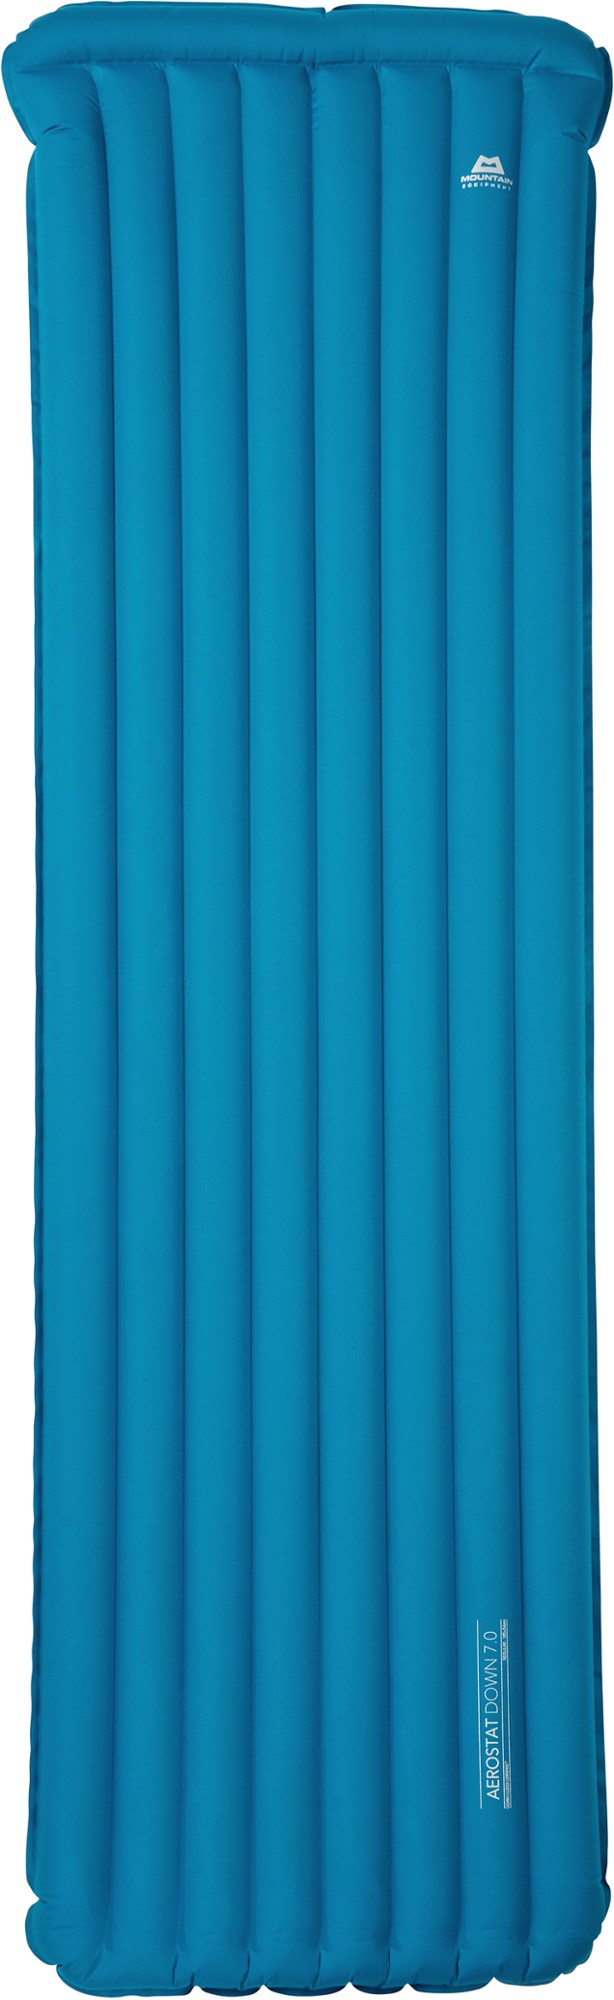 цена Спальный коврик Aerostat Down 7.0 Mountain Equipment, синий